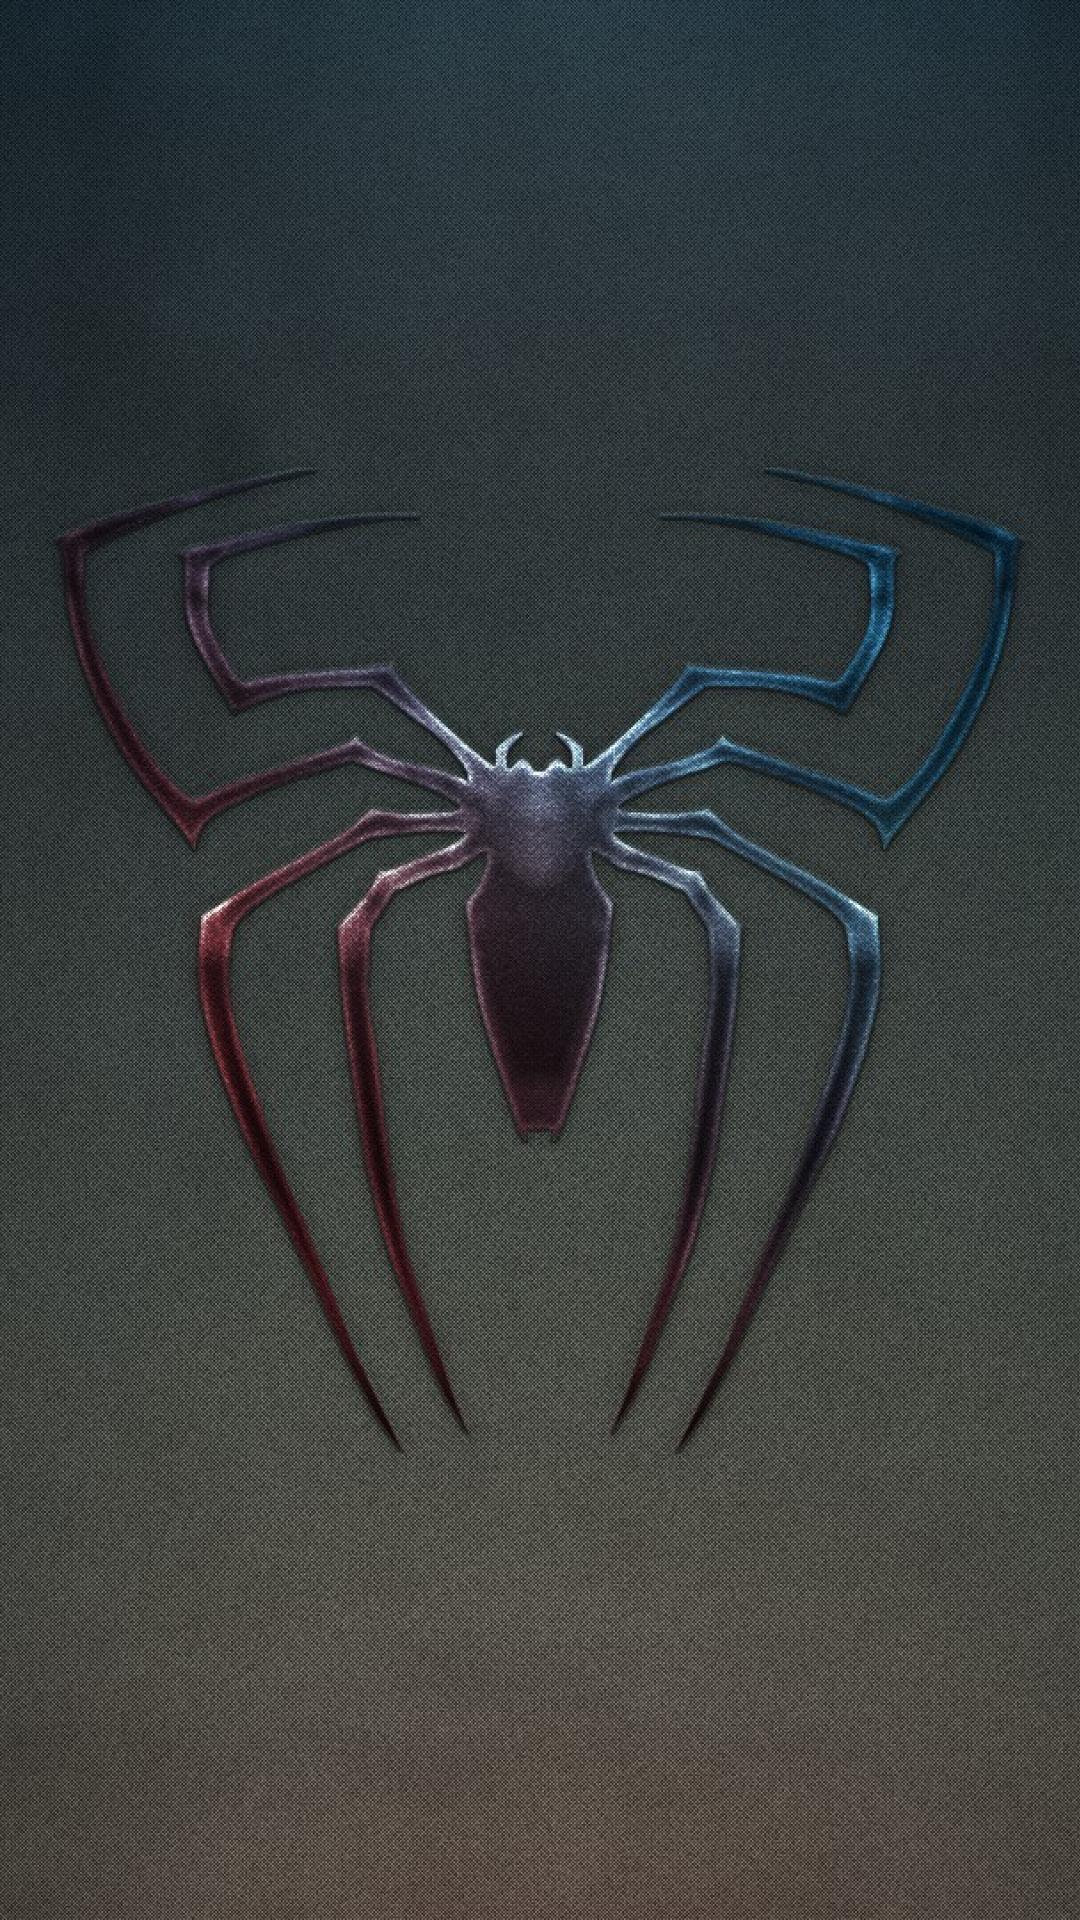 Spider-man logo noise grunge background wallpaper | (113757)